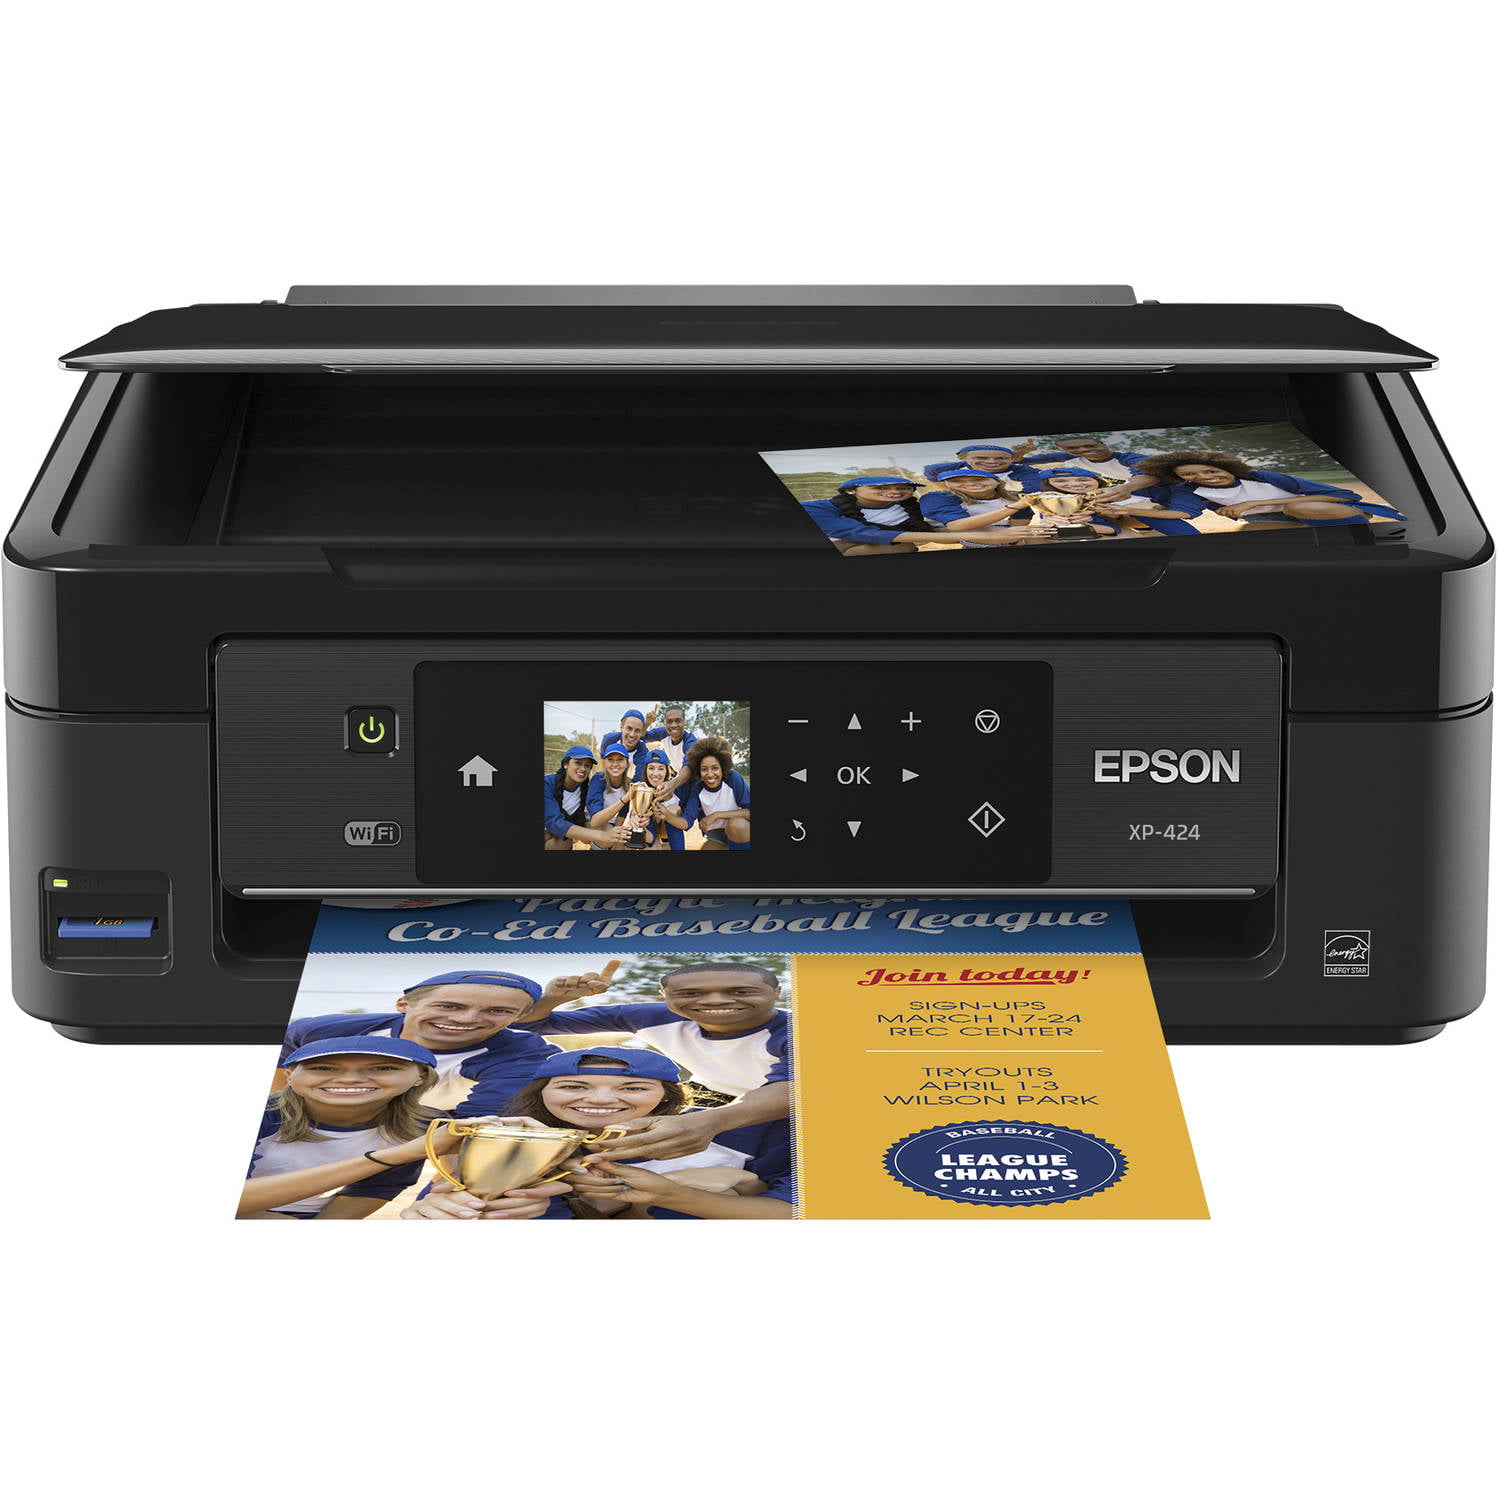 Epson XP 410 Printer Ink Walmart. Epson expression Home XP-320, цветн., a4. Epson expression Home XP-420, цветн., a4. Epson expression Home XP-323, цветн., a4. Epson expression home xp